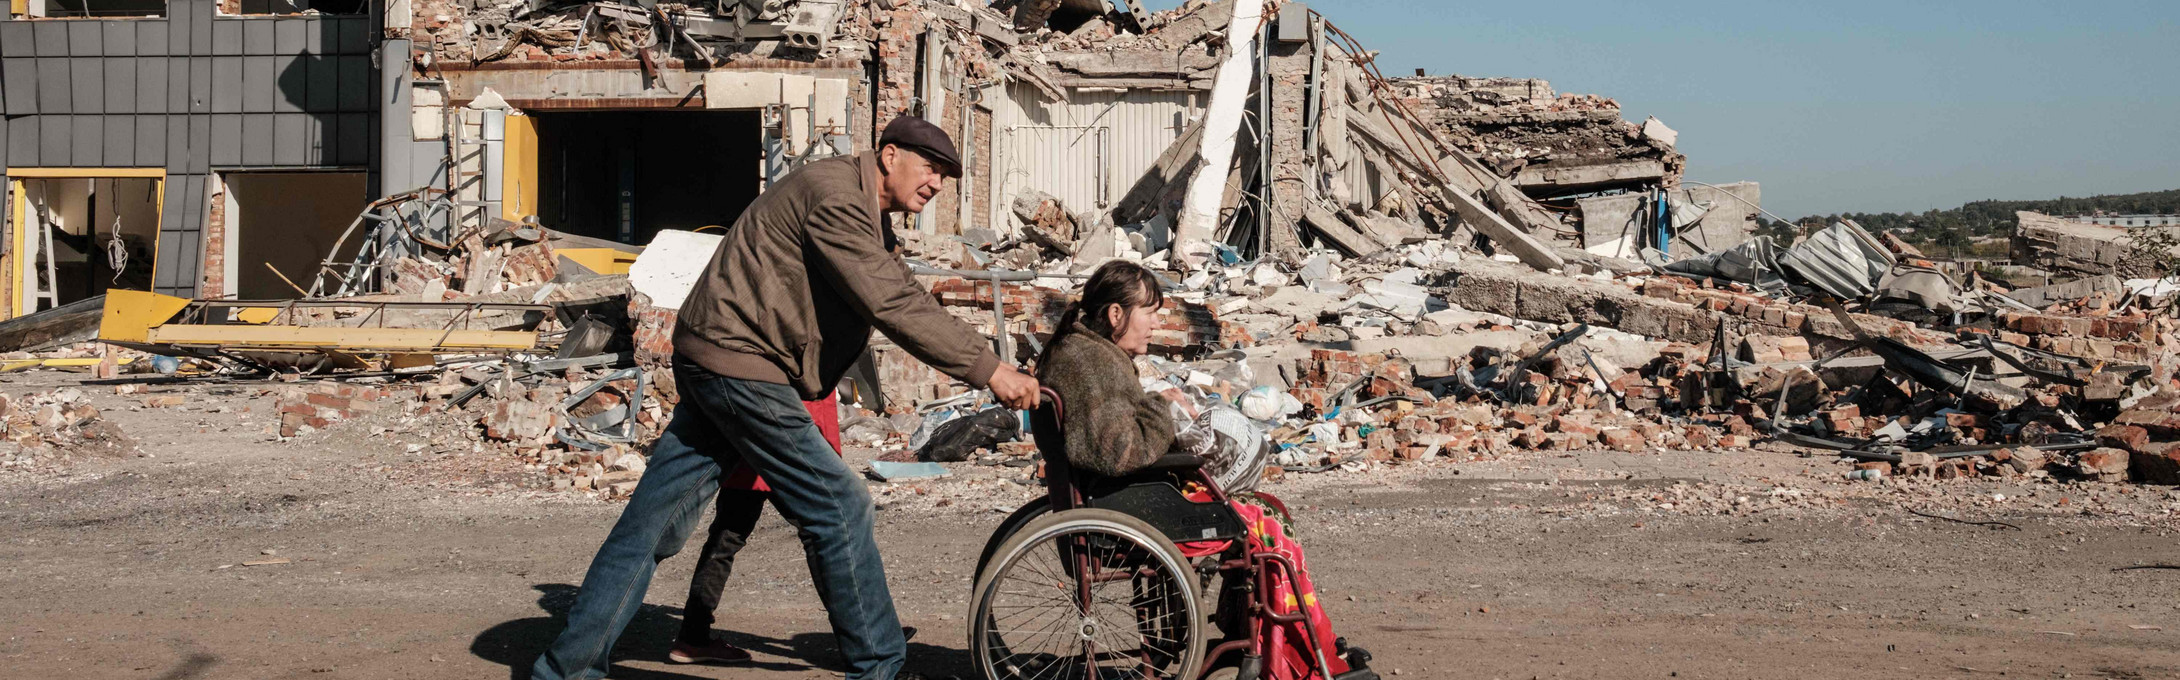 Mann schiebt Frau in Rollstuhl, im Hintergrund sind zerstörrte Häuser zu sehen